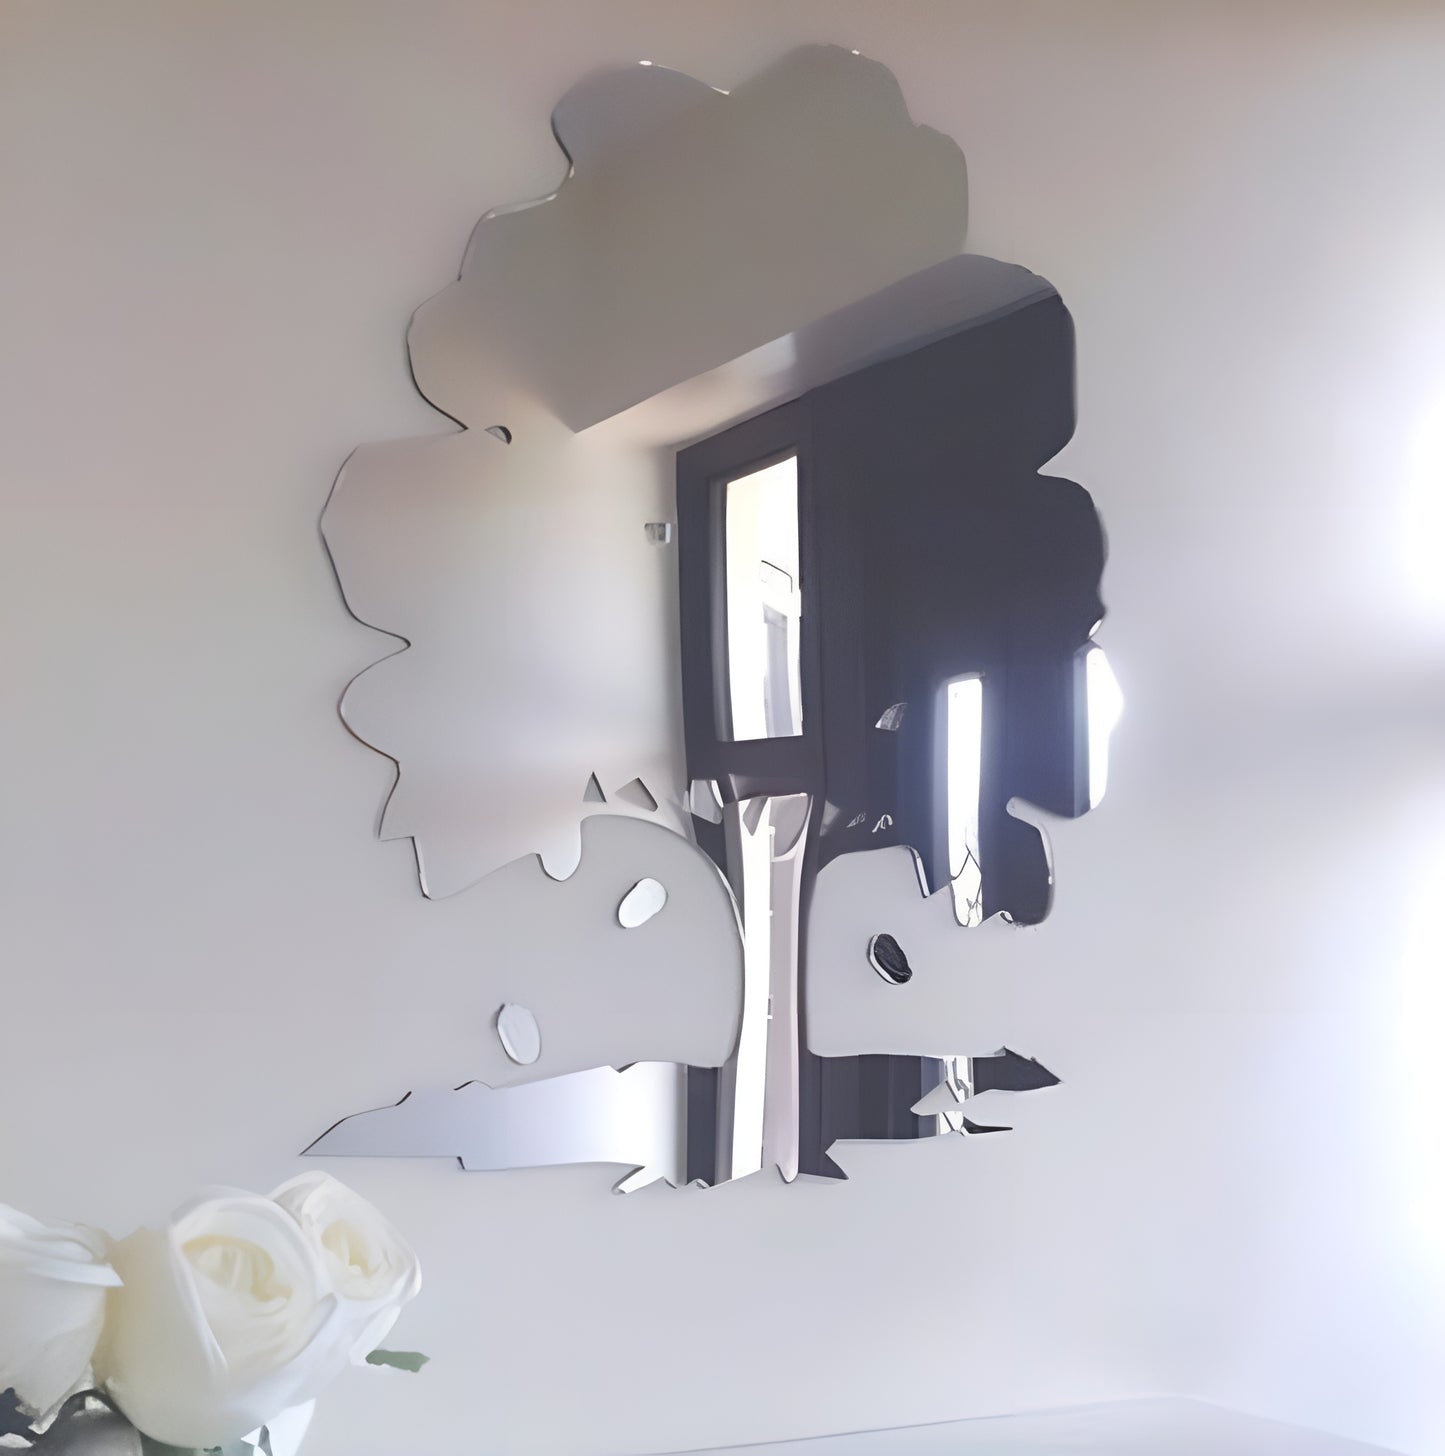 Oak Tree &amp; Acorns Shaped Acrylic Mirror Wall Stickers